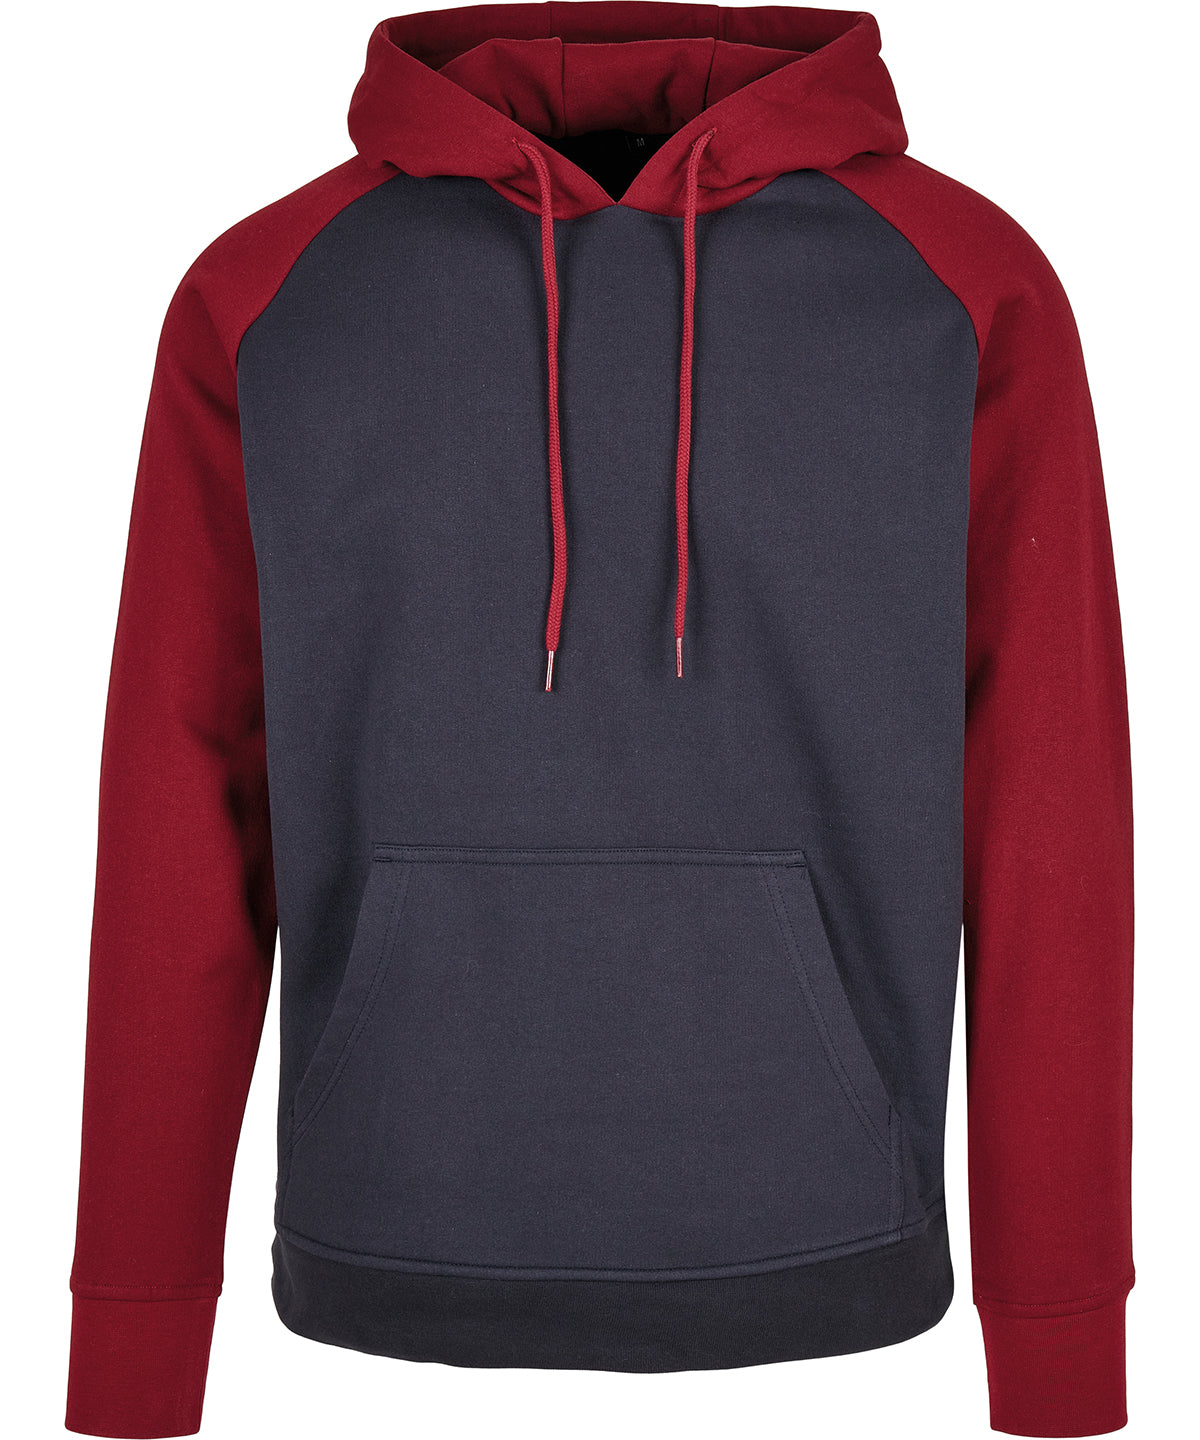 Personalised Hoodies - Black Build Your Brand Basic Basic raglan hoodie